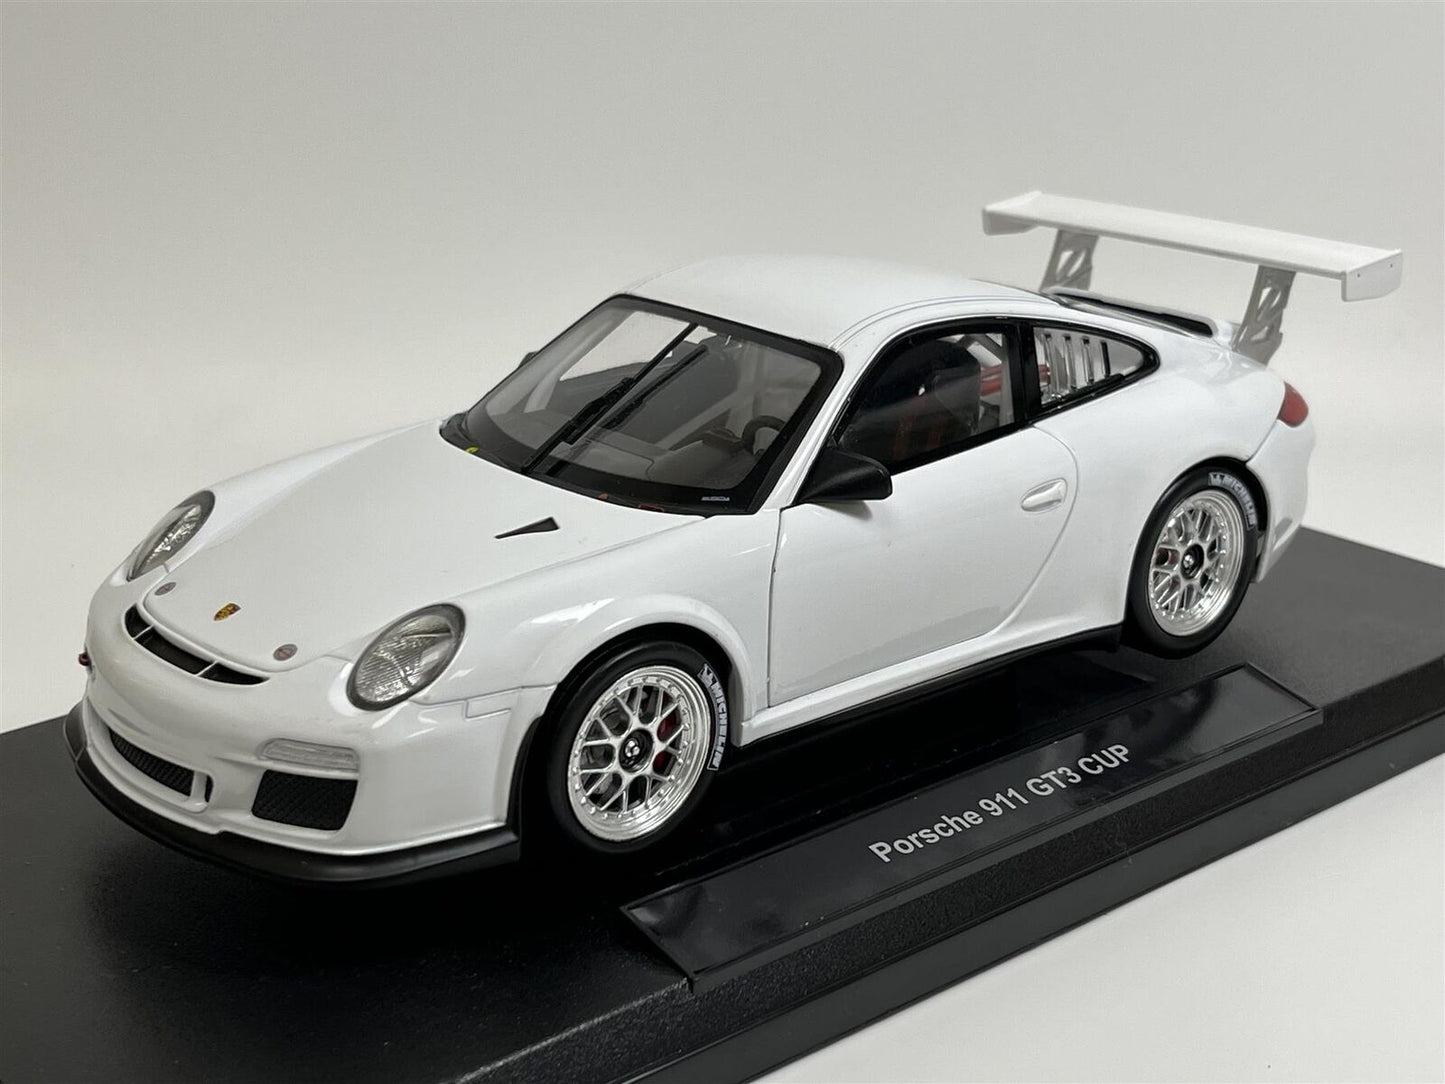 Welly Porsche 911 (997) GT3 Cup Car Street Version White 1:18